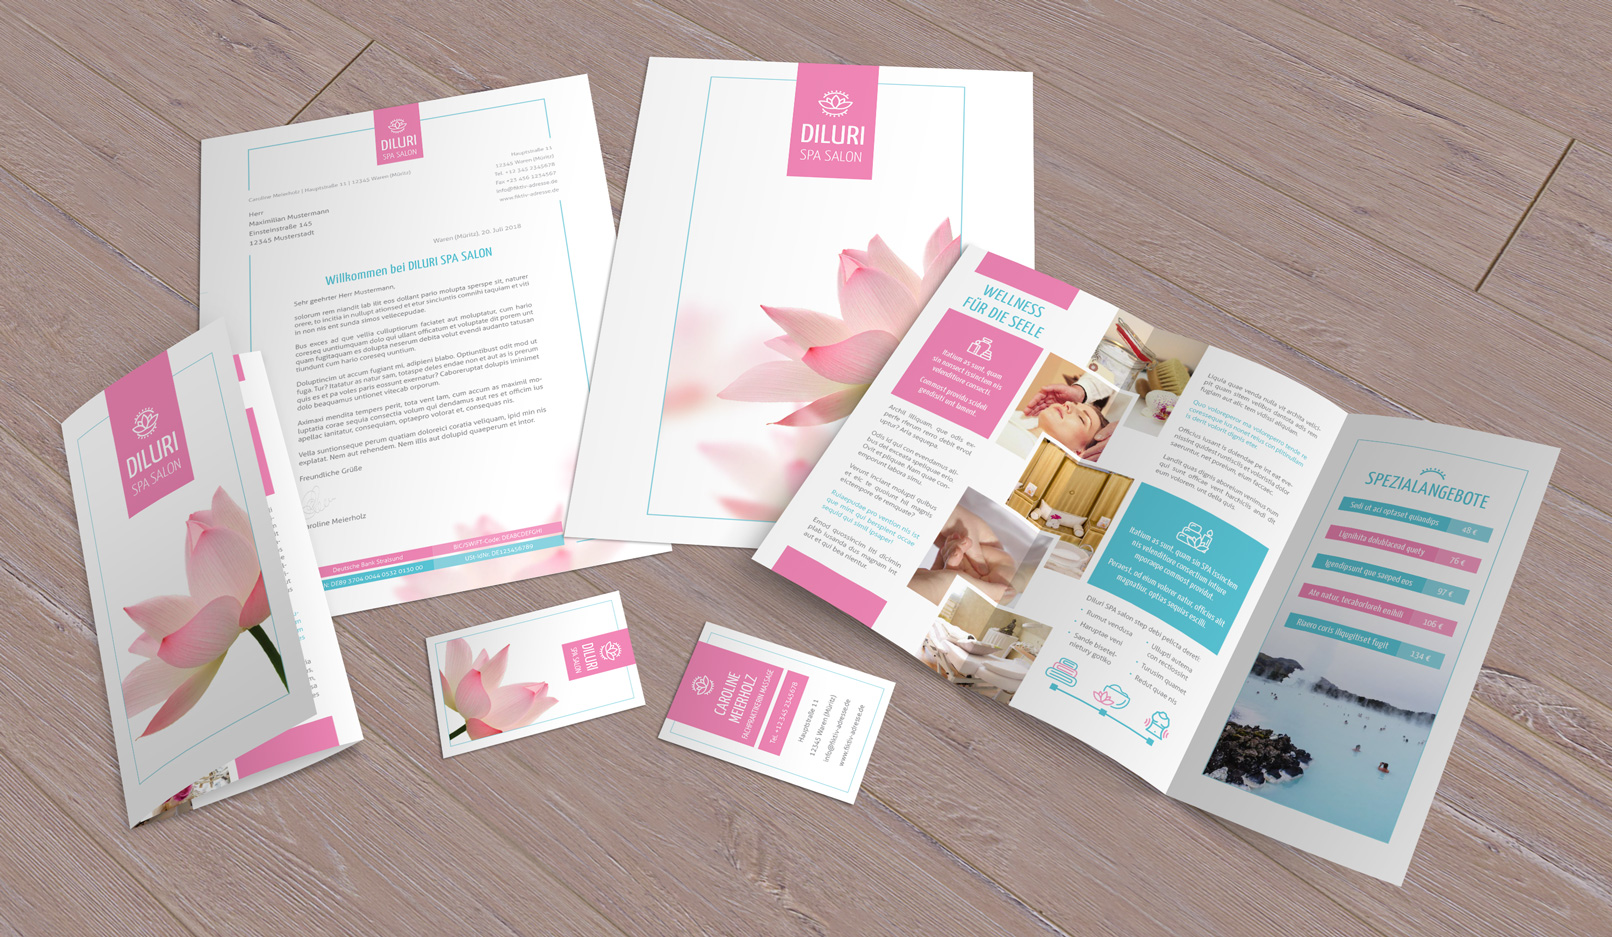 Vorlagen im Corporate Design für den Bereich Wellness und Friseure: Flyer, Briefpapier, Visitenkarten